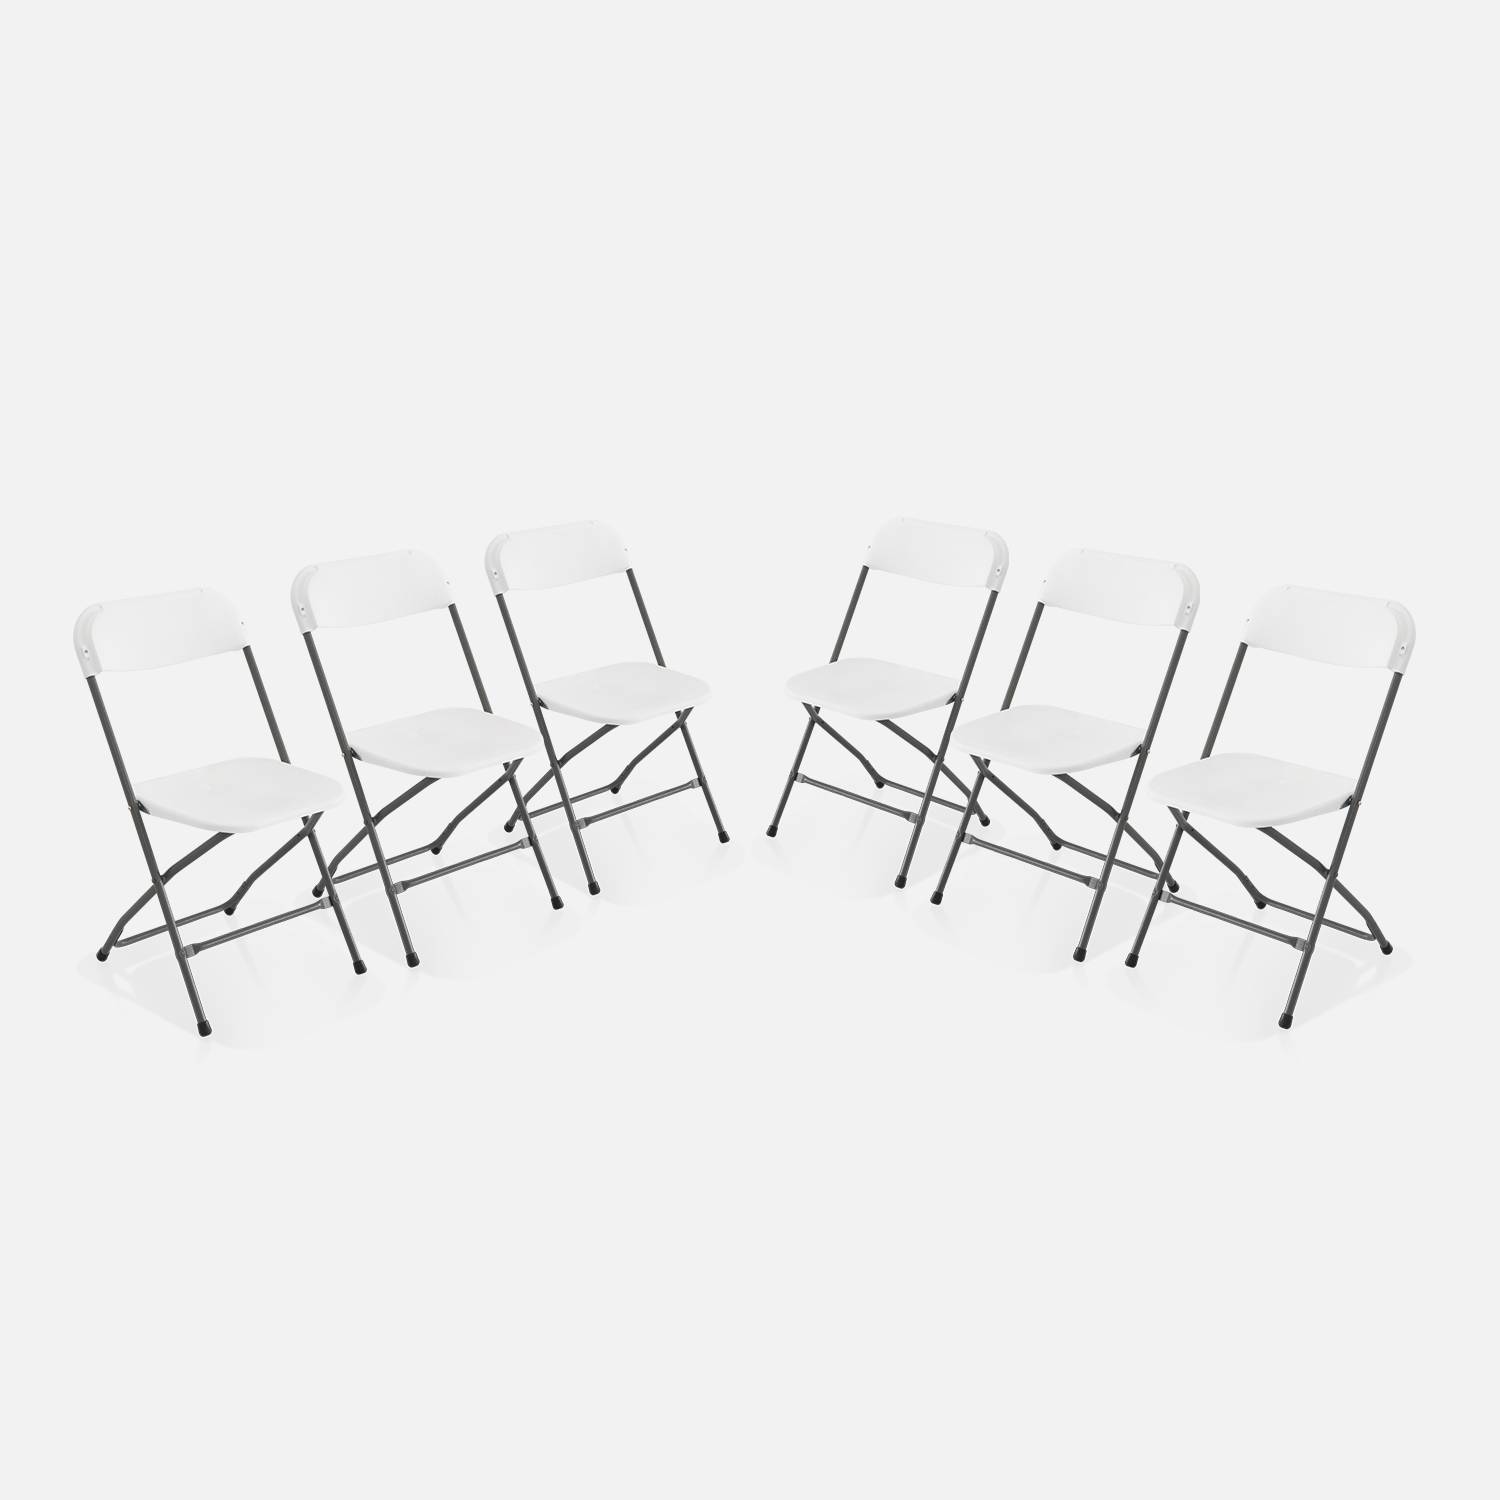  Klappbare Party-Stühle - Fiesta - 6 Stühle aus Kunststoff und Metall Photo3